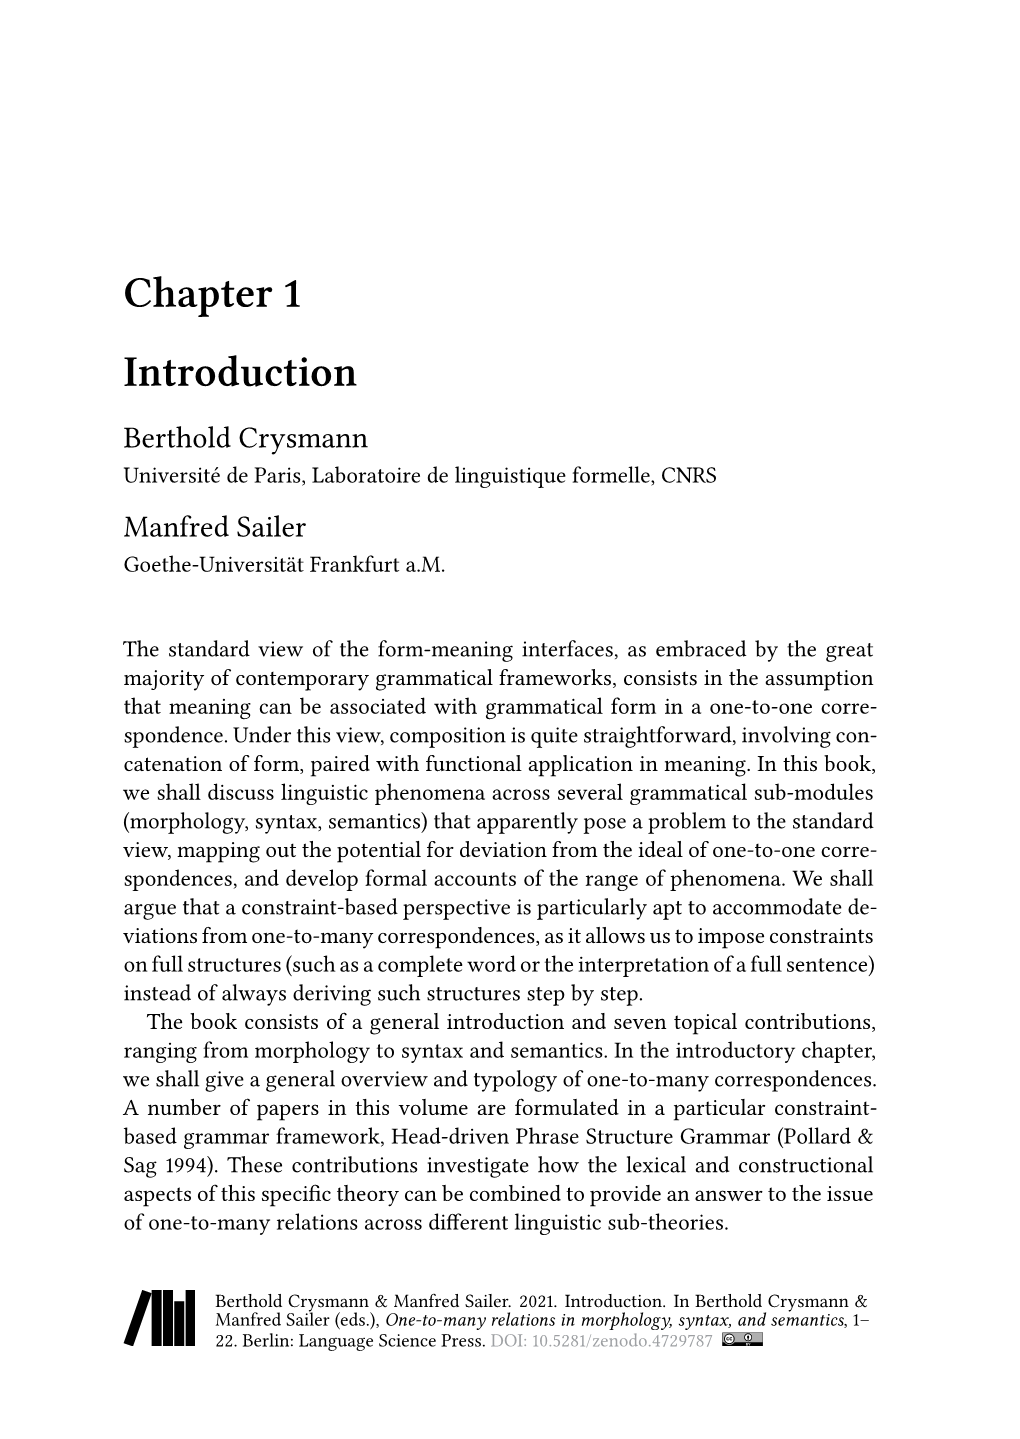 Chapter 1 Introduction Berthold Crysmann Université De Paris, Laboratoire De Linguistique Formelle, CNRS Manfred Sailer Goethe-Universität Frankfurt A.M